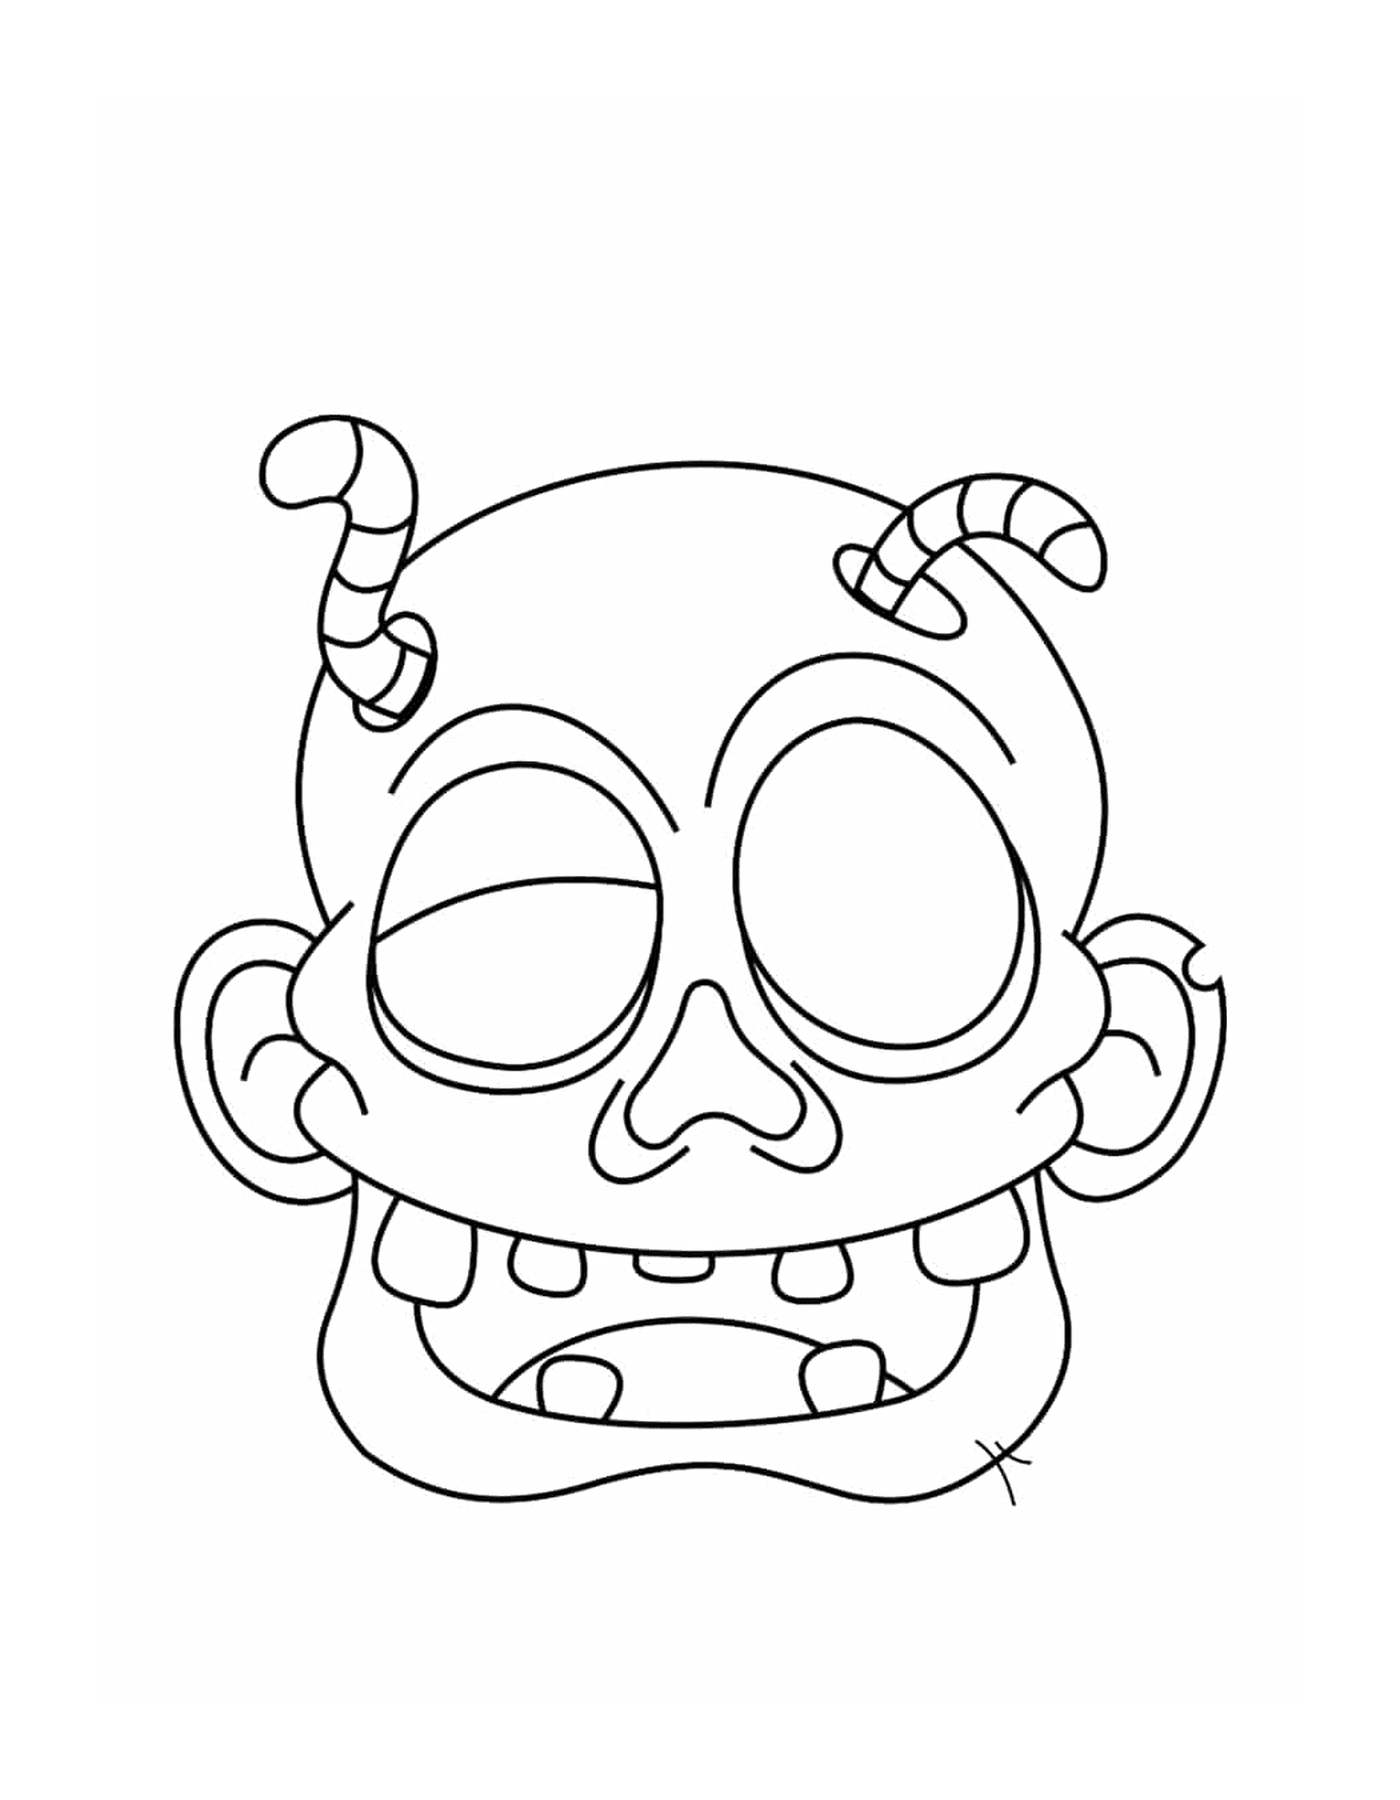  Una testa di zombie in cartone animato 